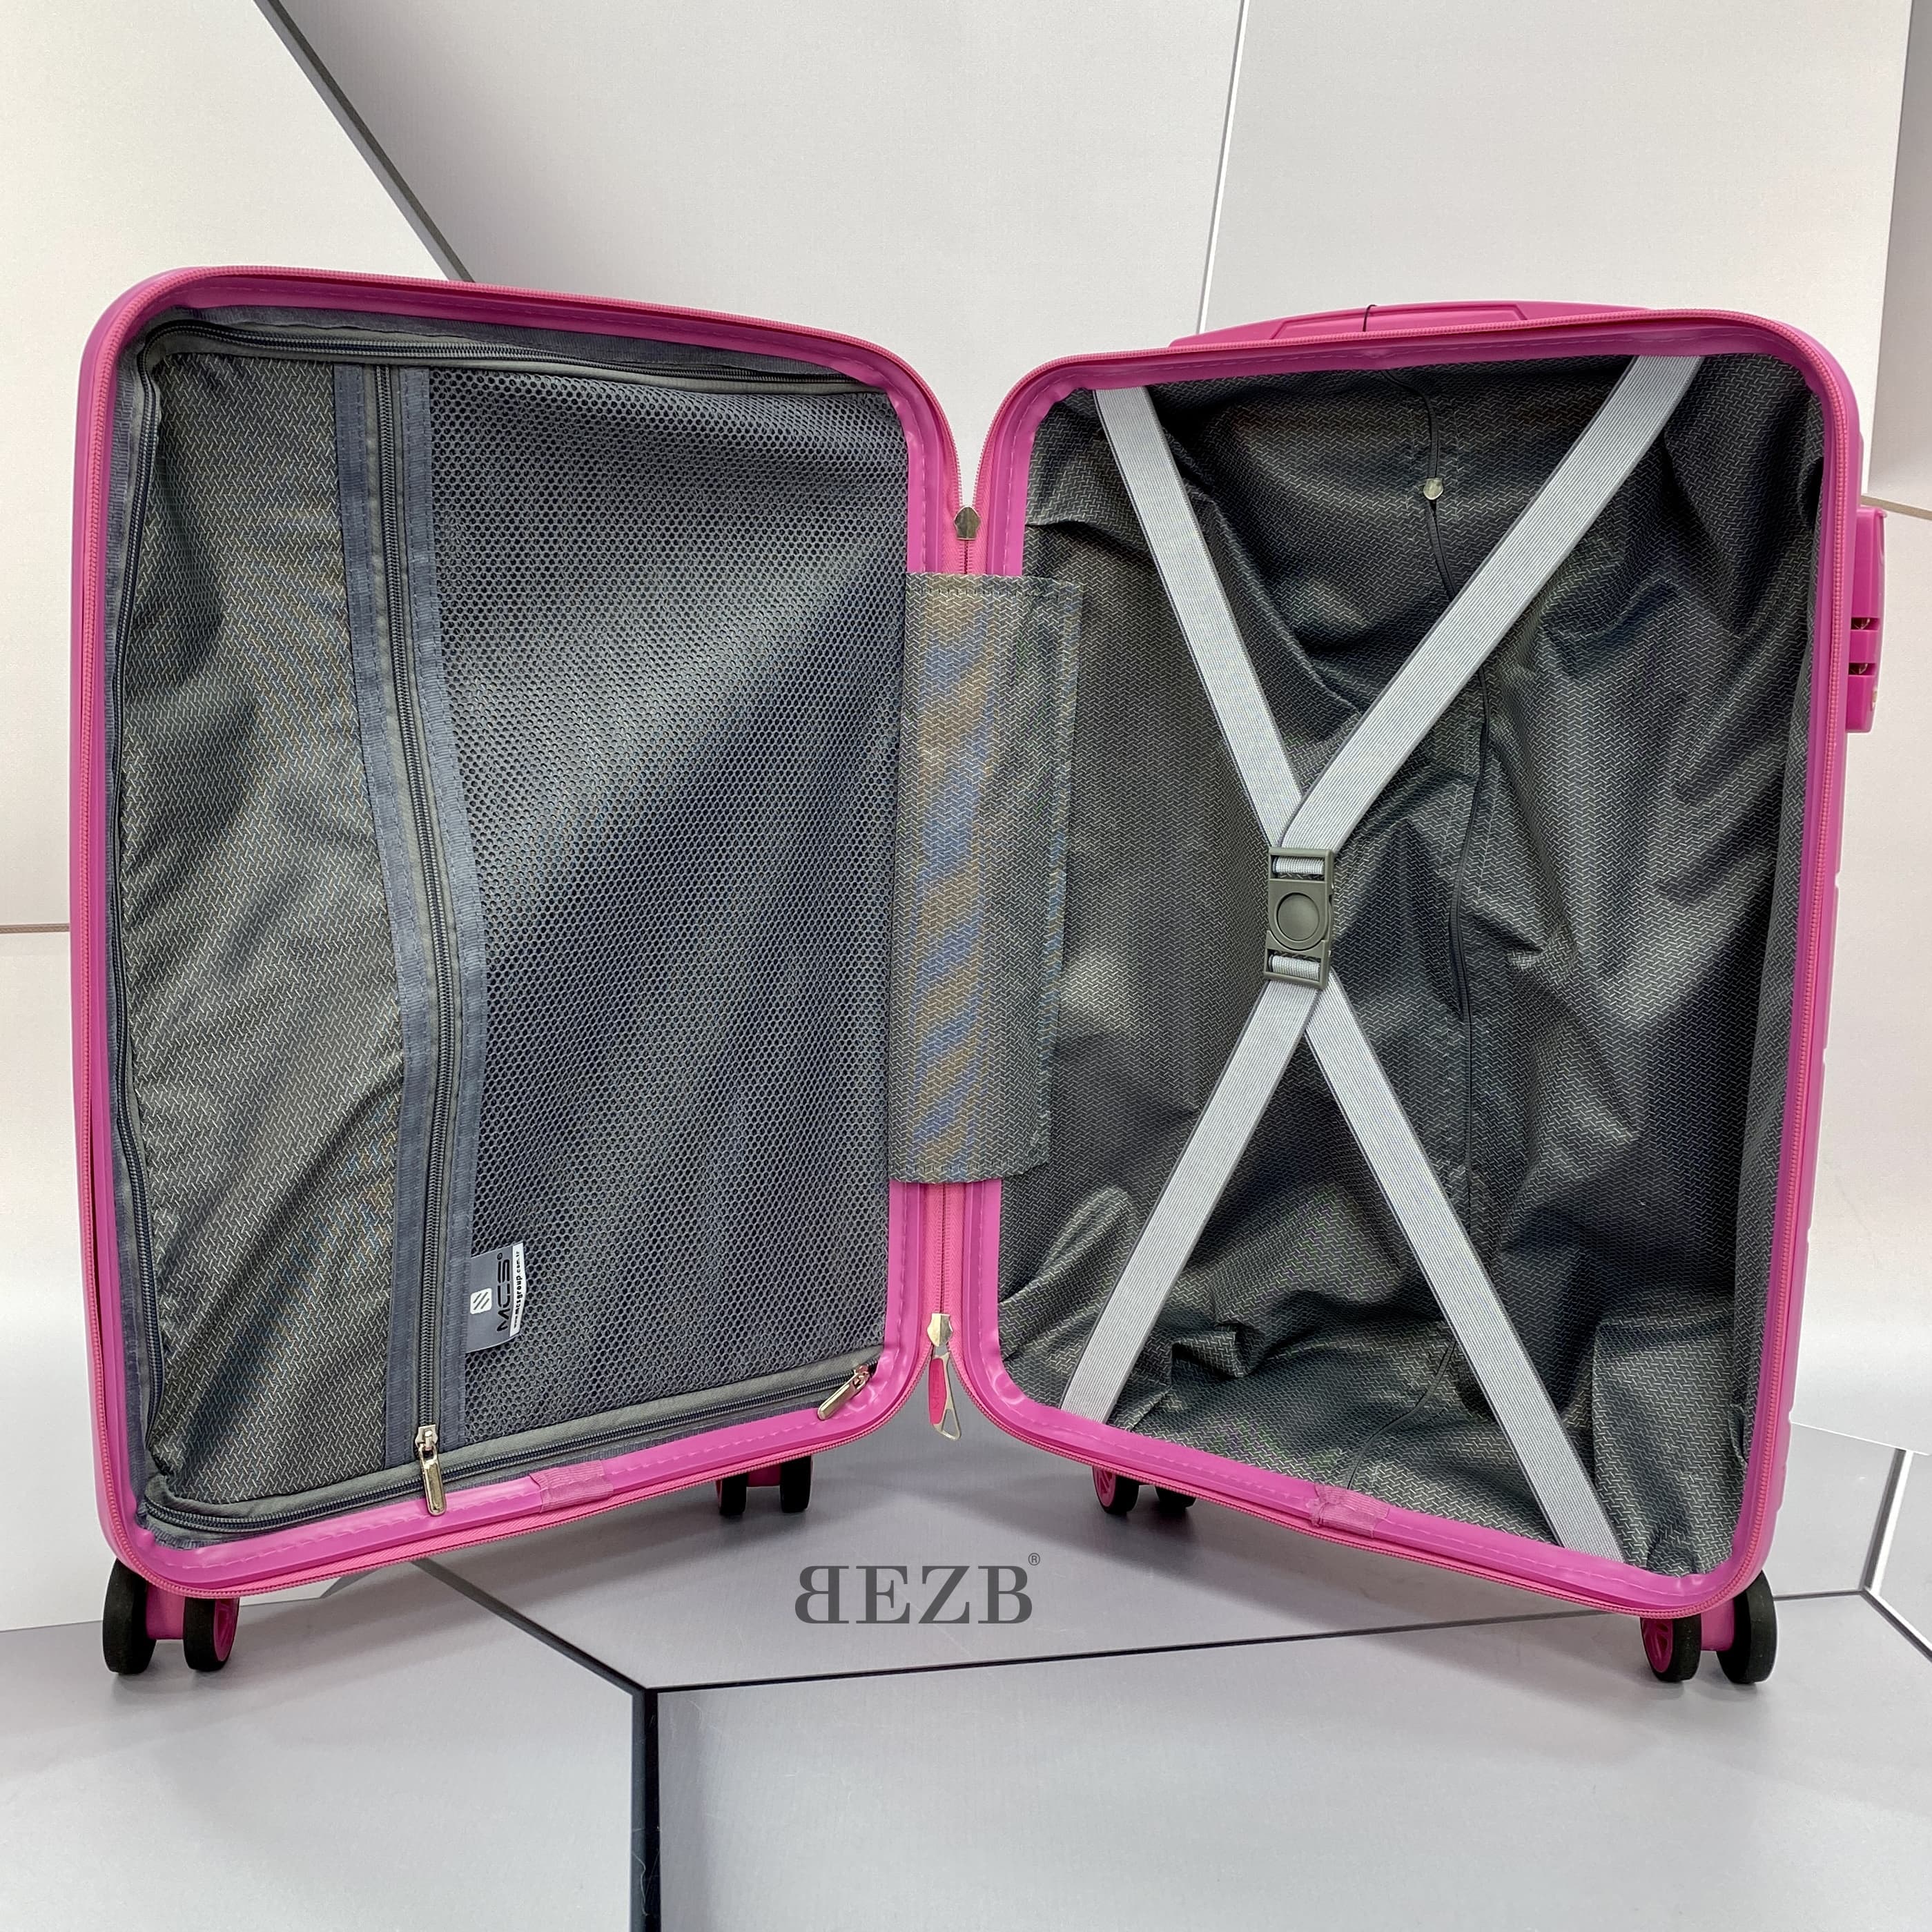 Маленький чемодан для ручьной клади из полипропилена MCS V366 S FUNCSIA! Для 8-10 кг! - 2